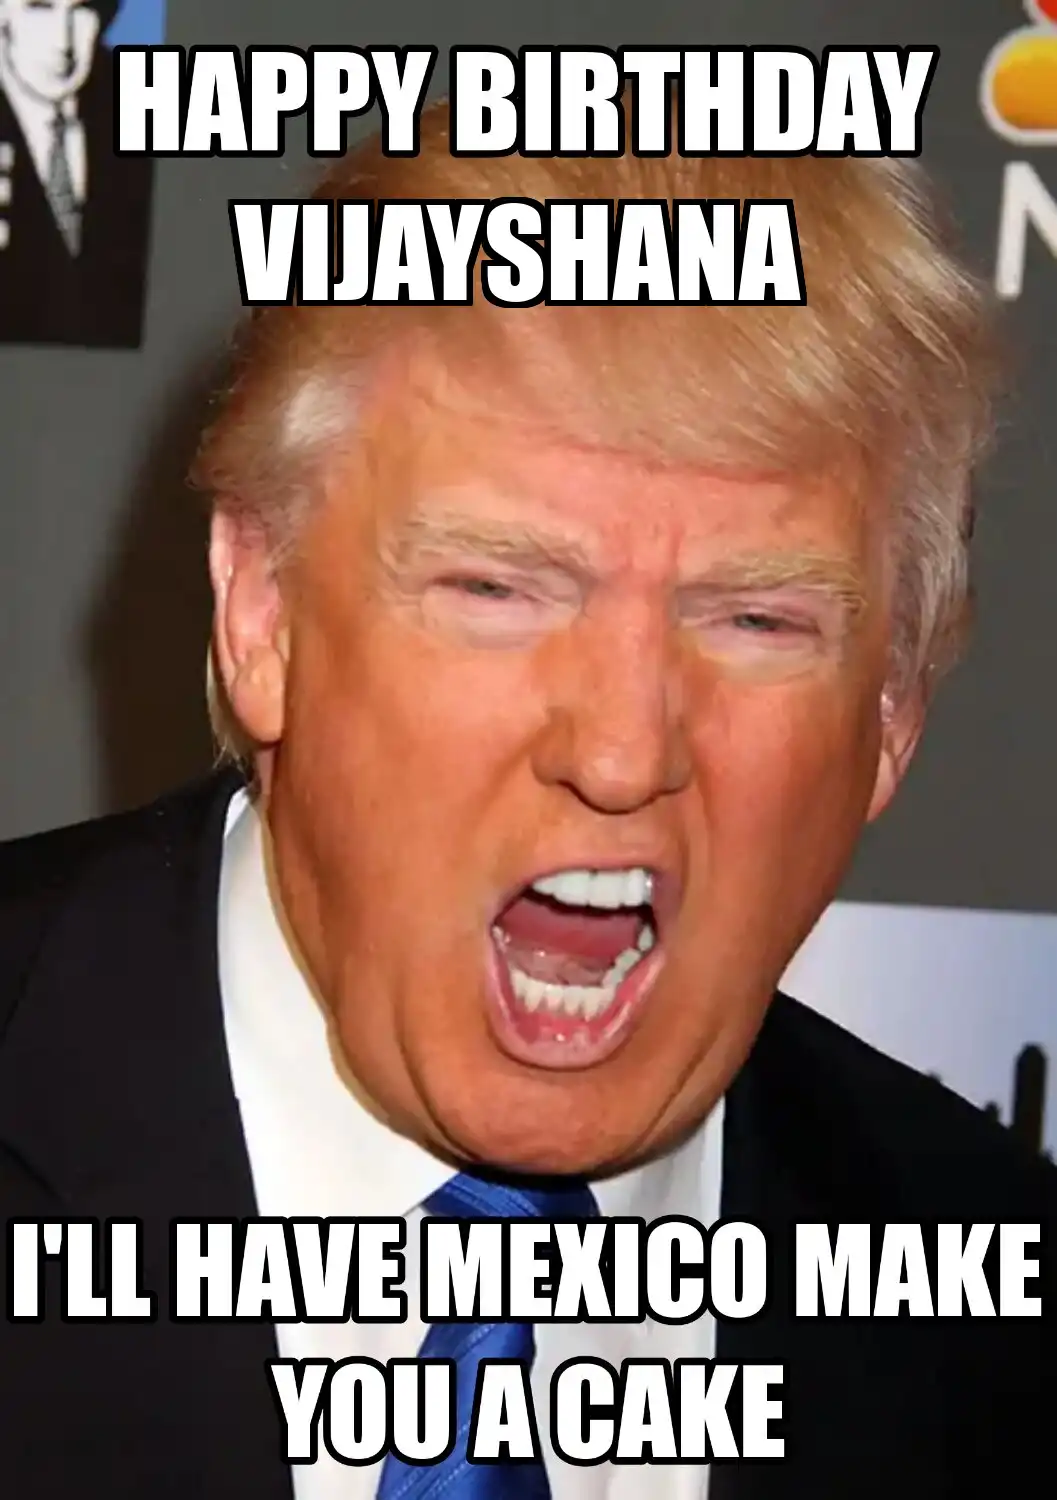 Happy Birthday Vijayshana Mexico Make You A Cake Meme